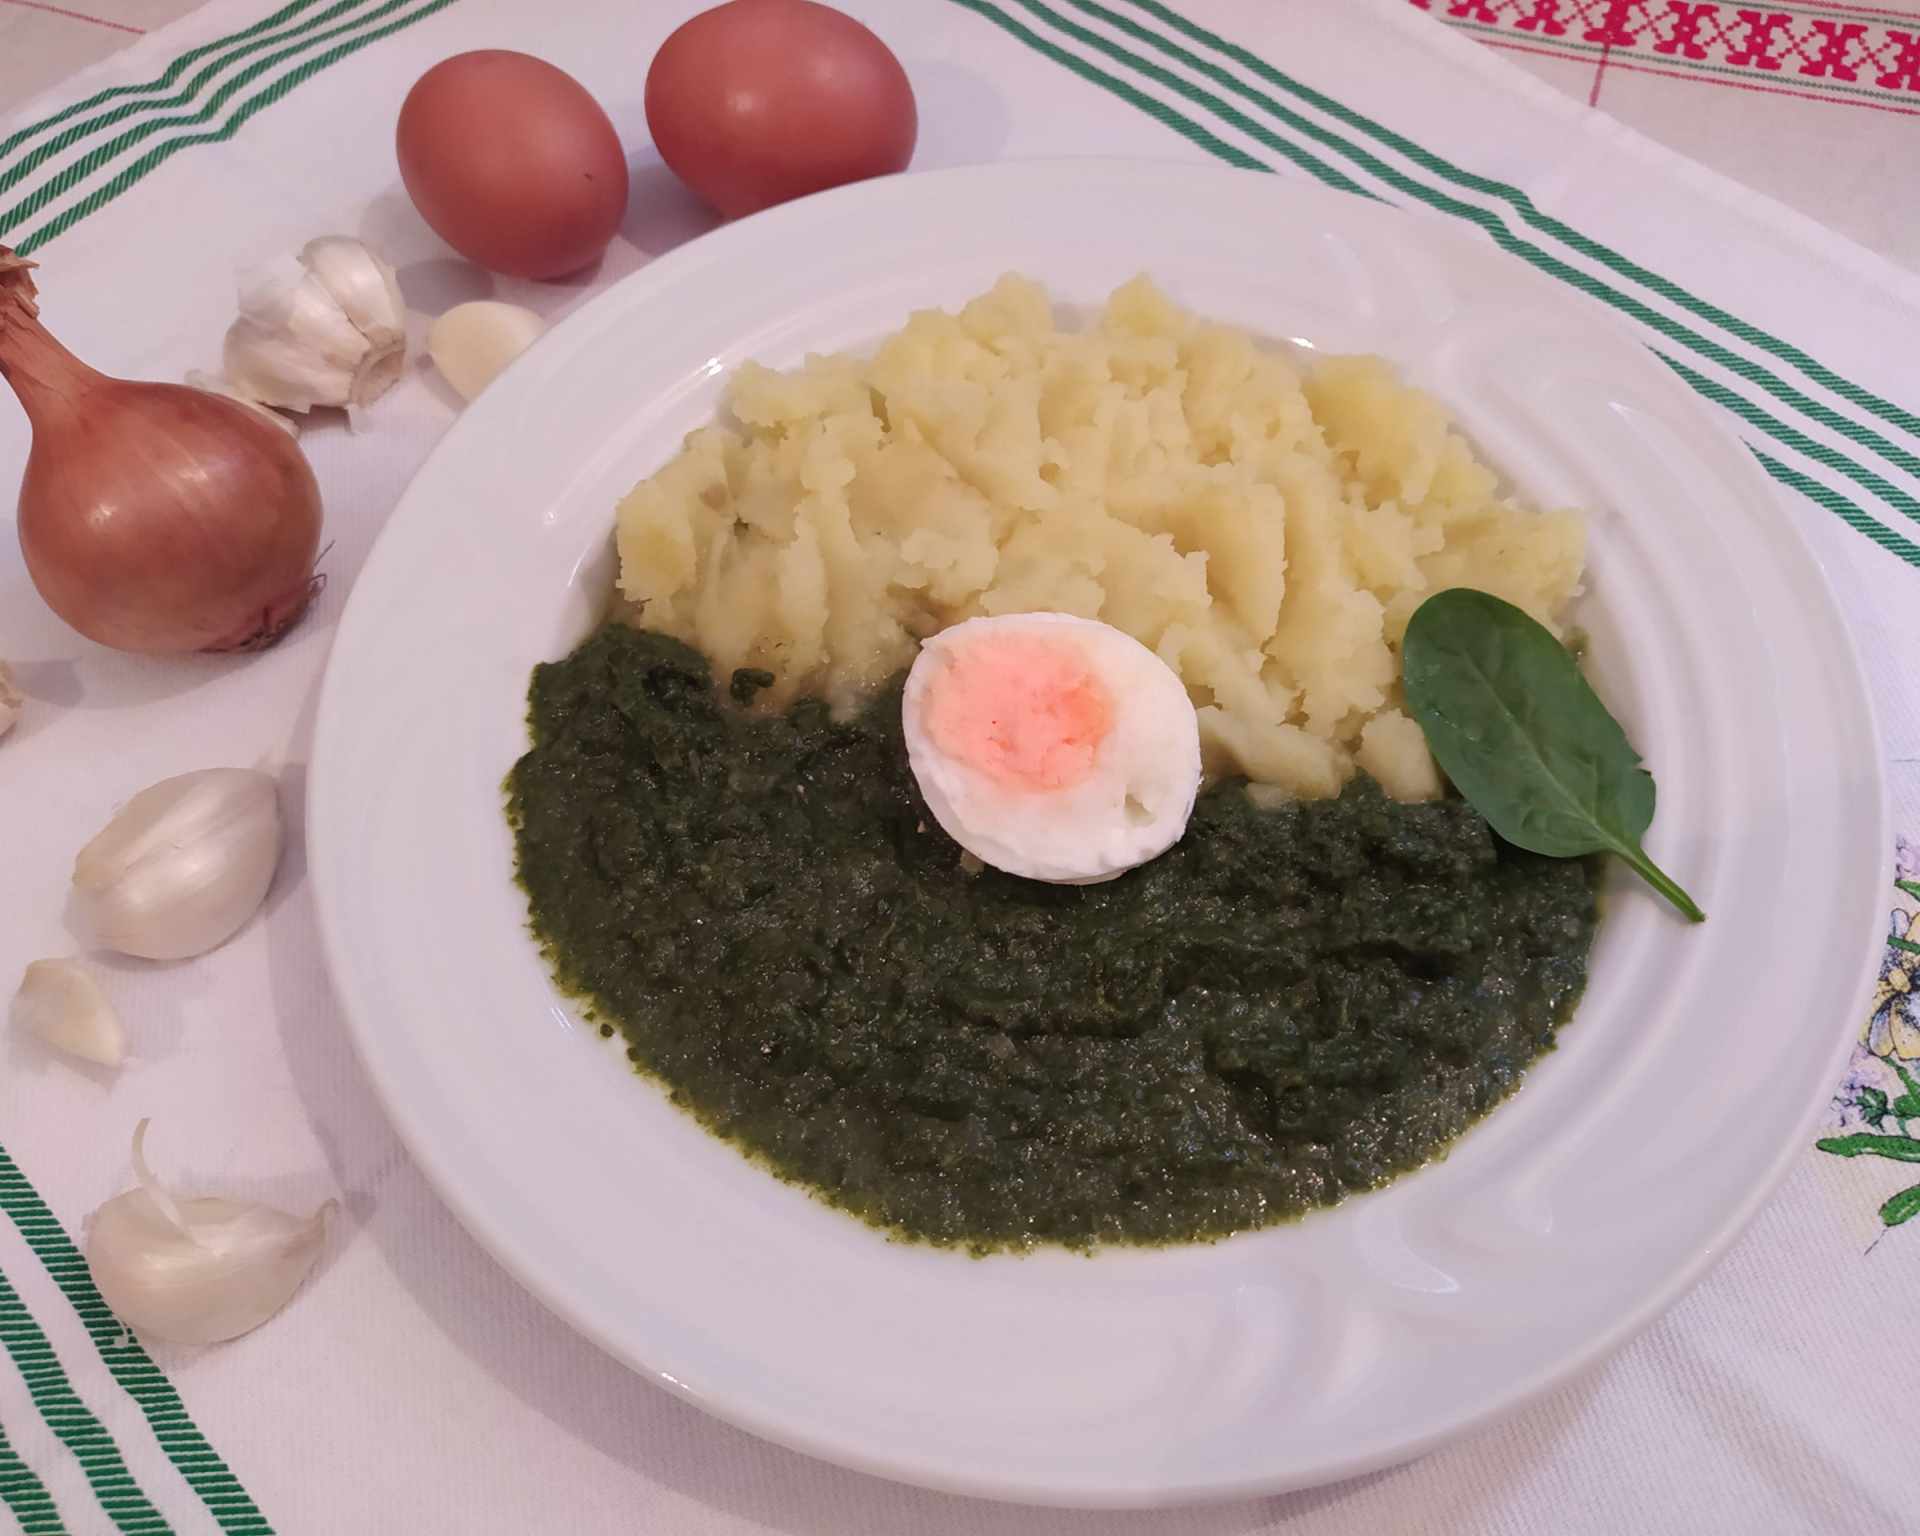 Špenátový prívarok so zemiakovou kašou a vajíčkom na tvrdo na bielom tanieri